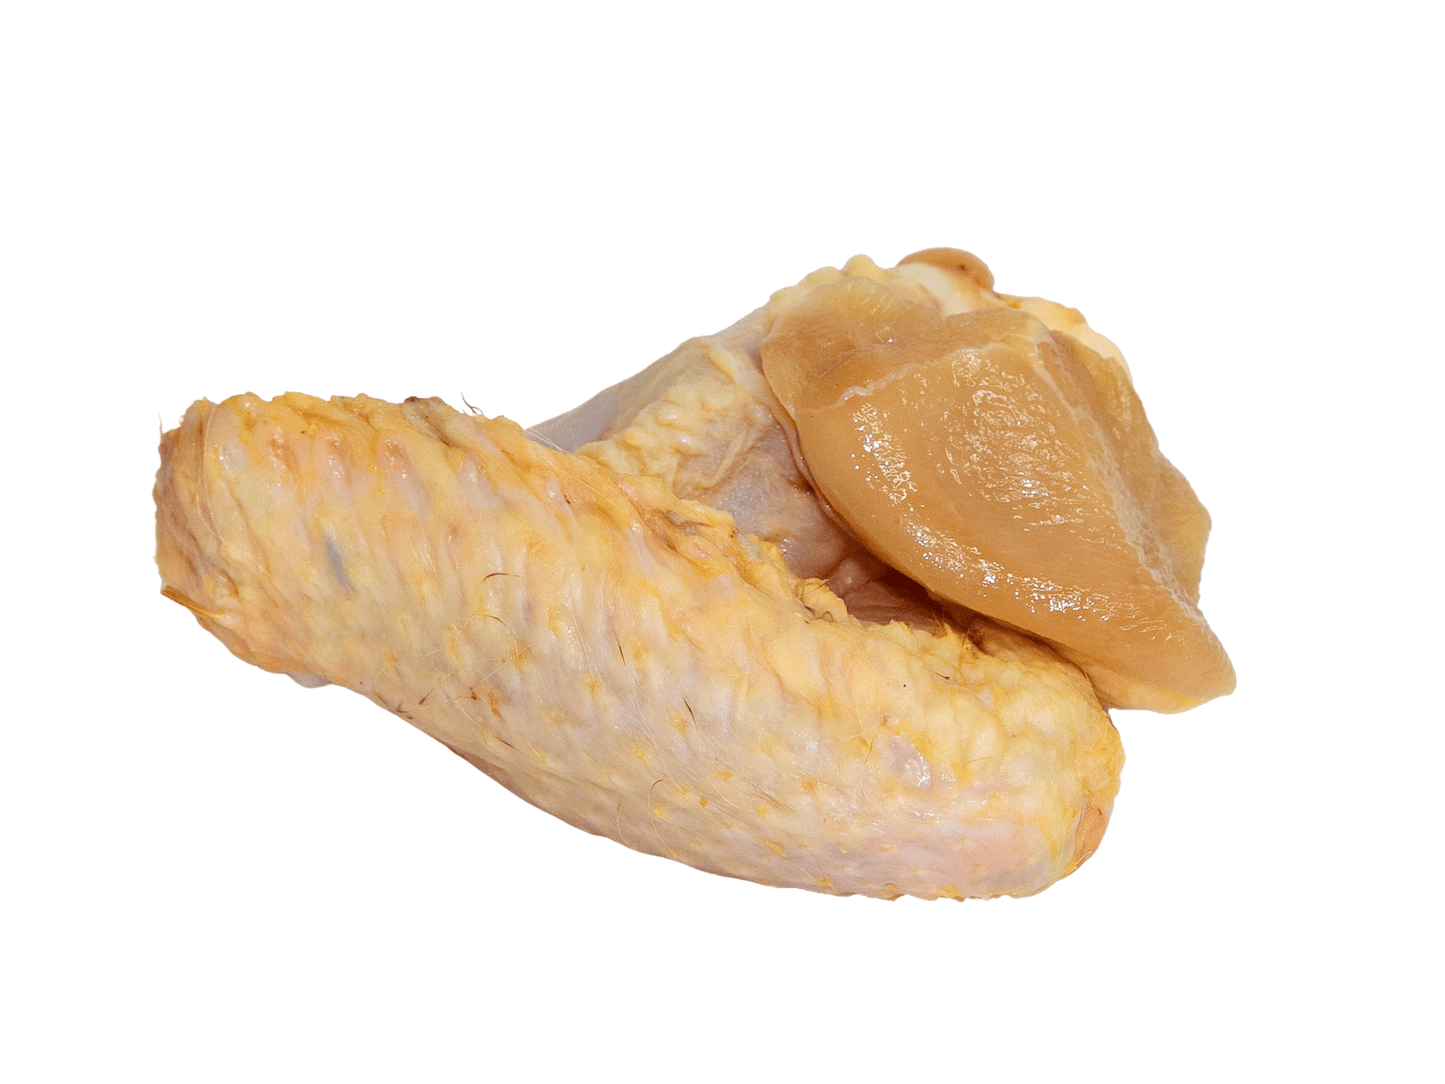 Alas de pollo de payés Granja Luisiana